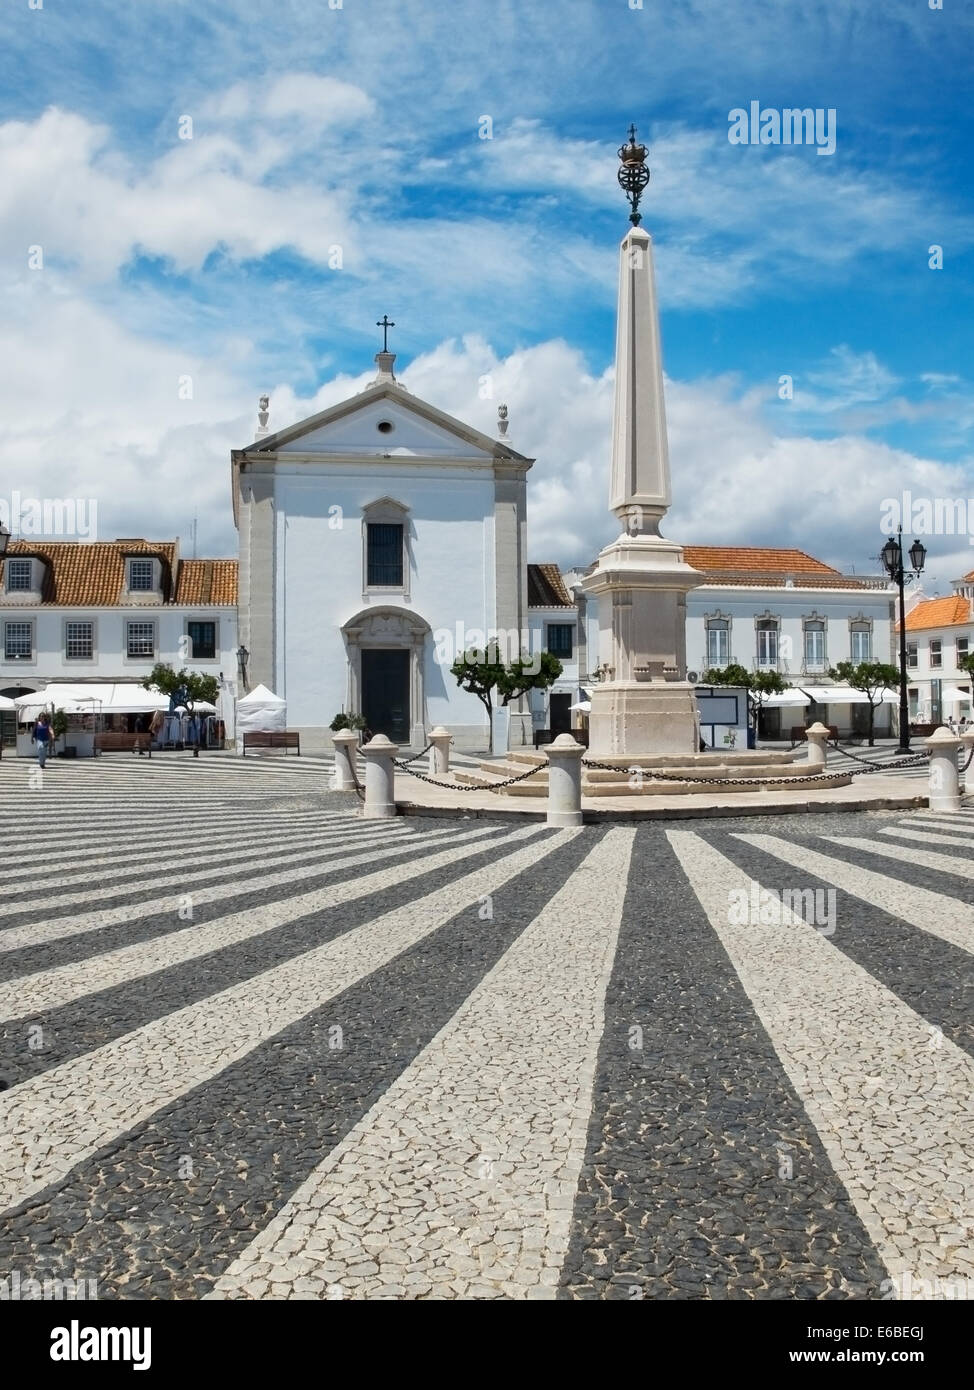 Praca Marques de Pombal, Vila Real de Santo Antonio, Algarve. Le Portugal. Banque D'Images